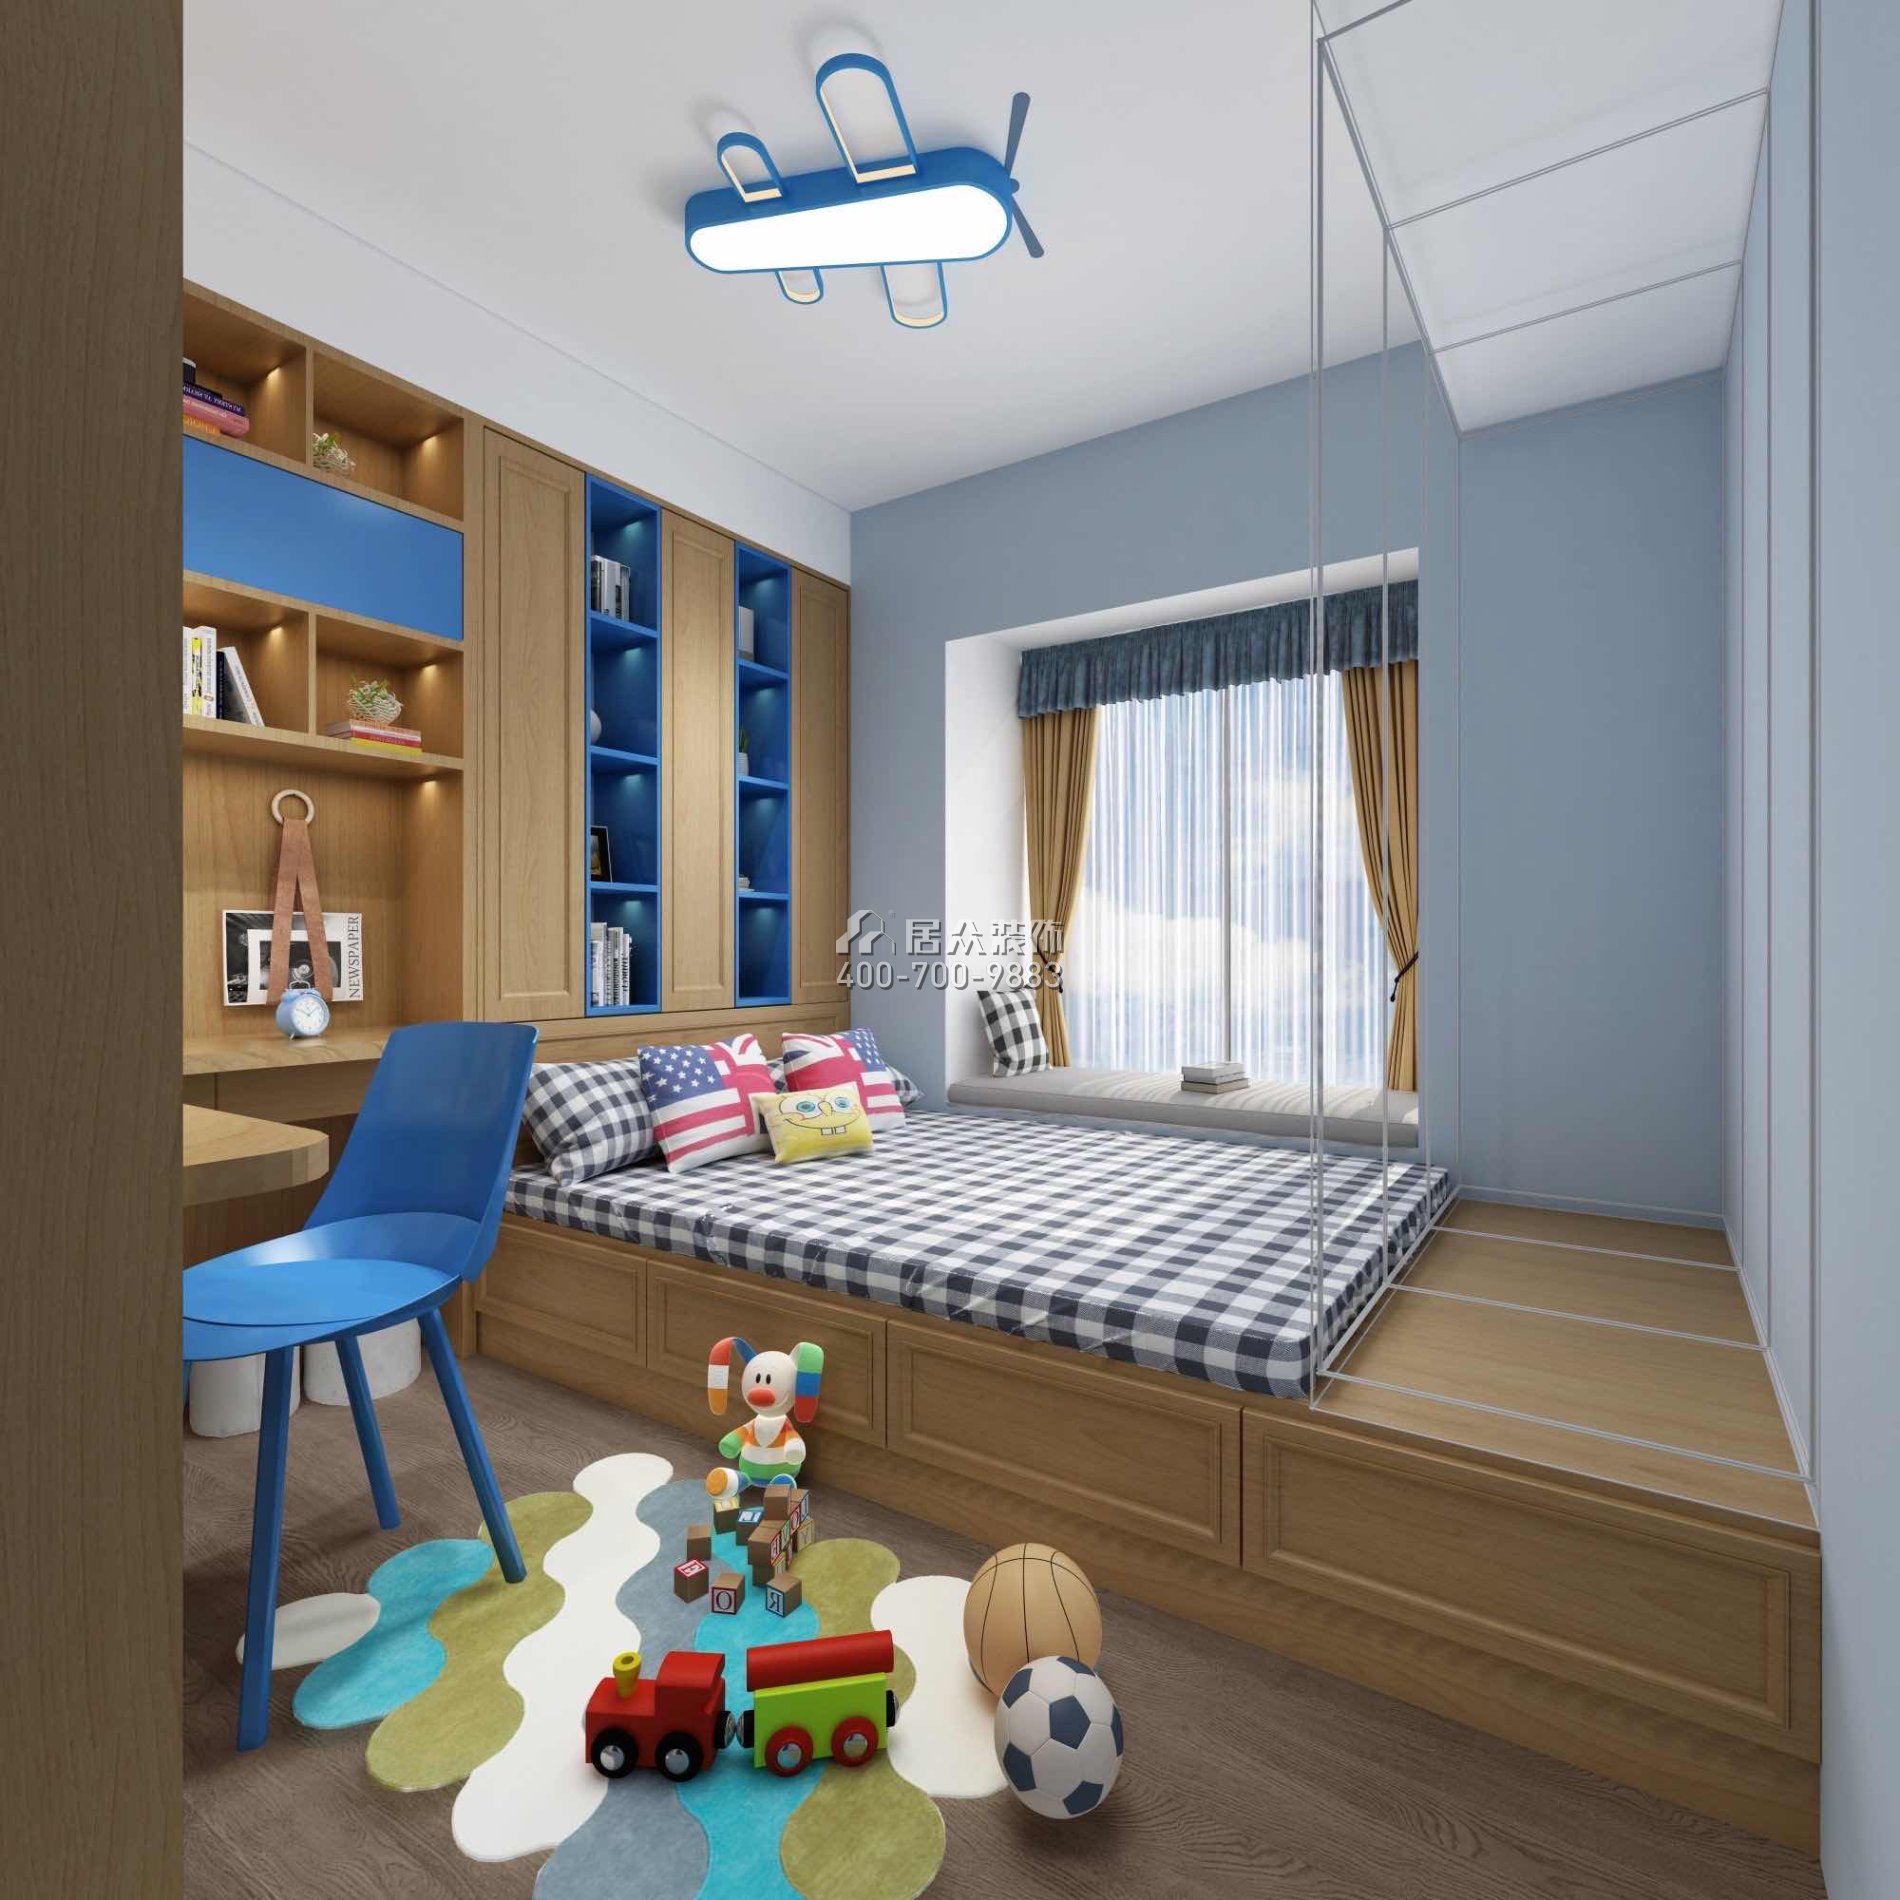 尚东领御216平方米现代简约风格平层户型儿童房装修效果图